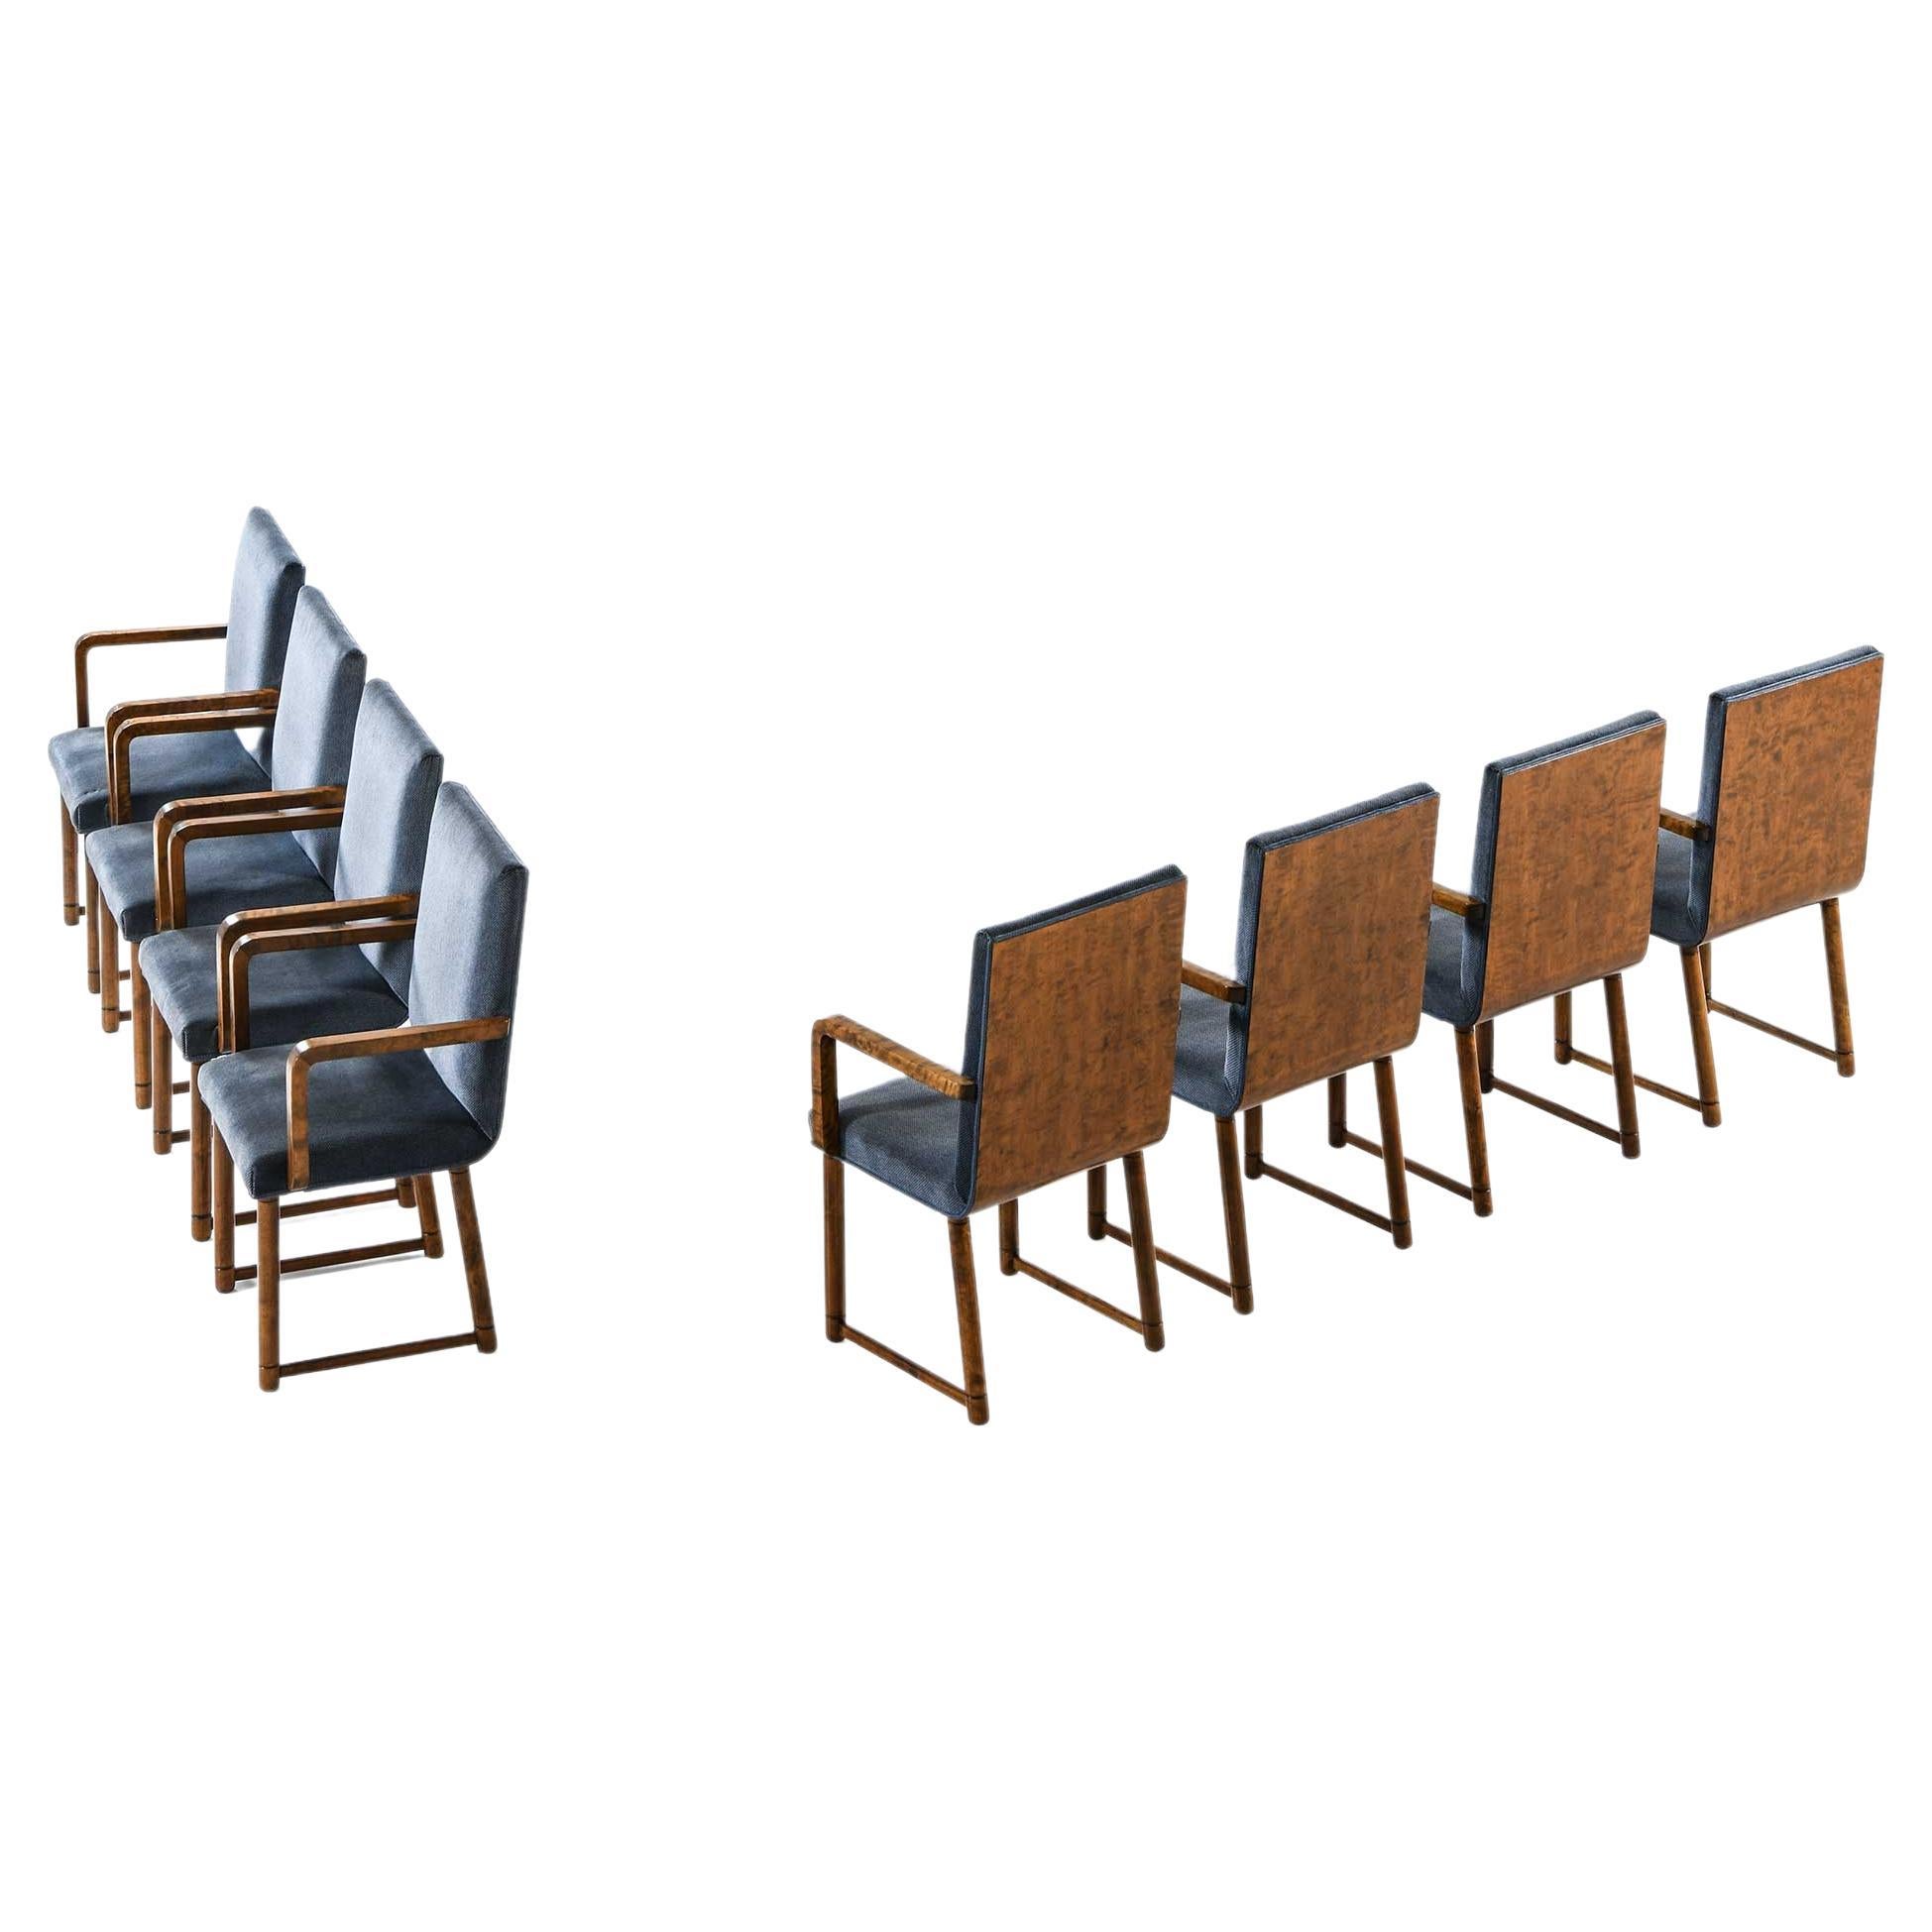 Ensemble de 8 fauteuils produits dans les années 1930 en Finlande